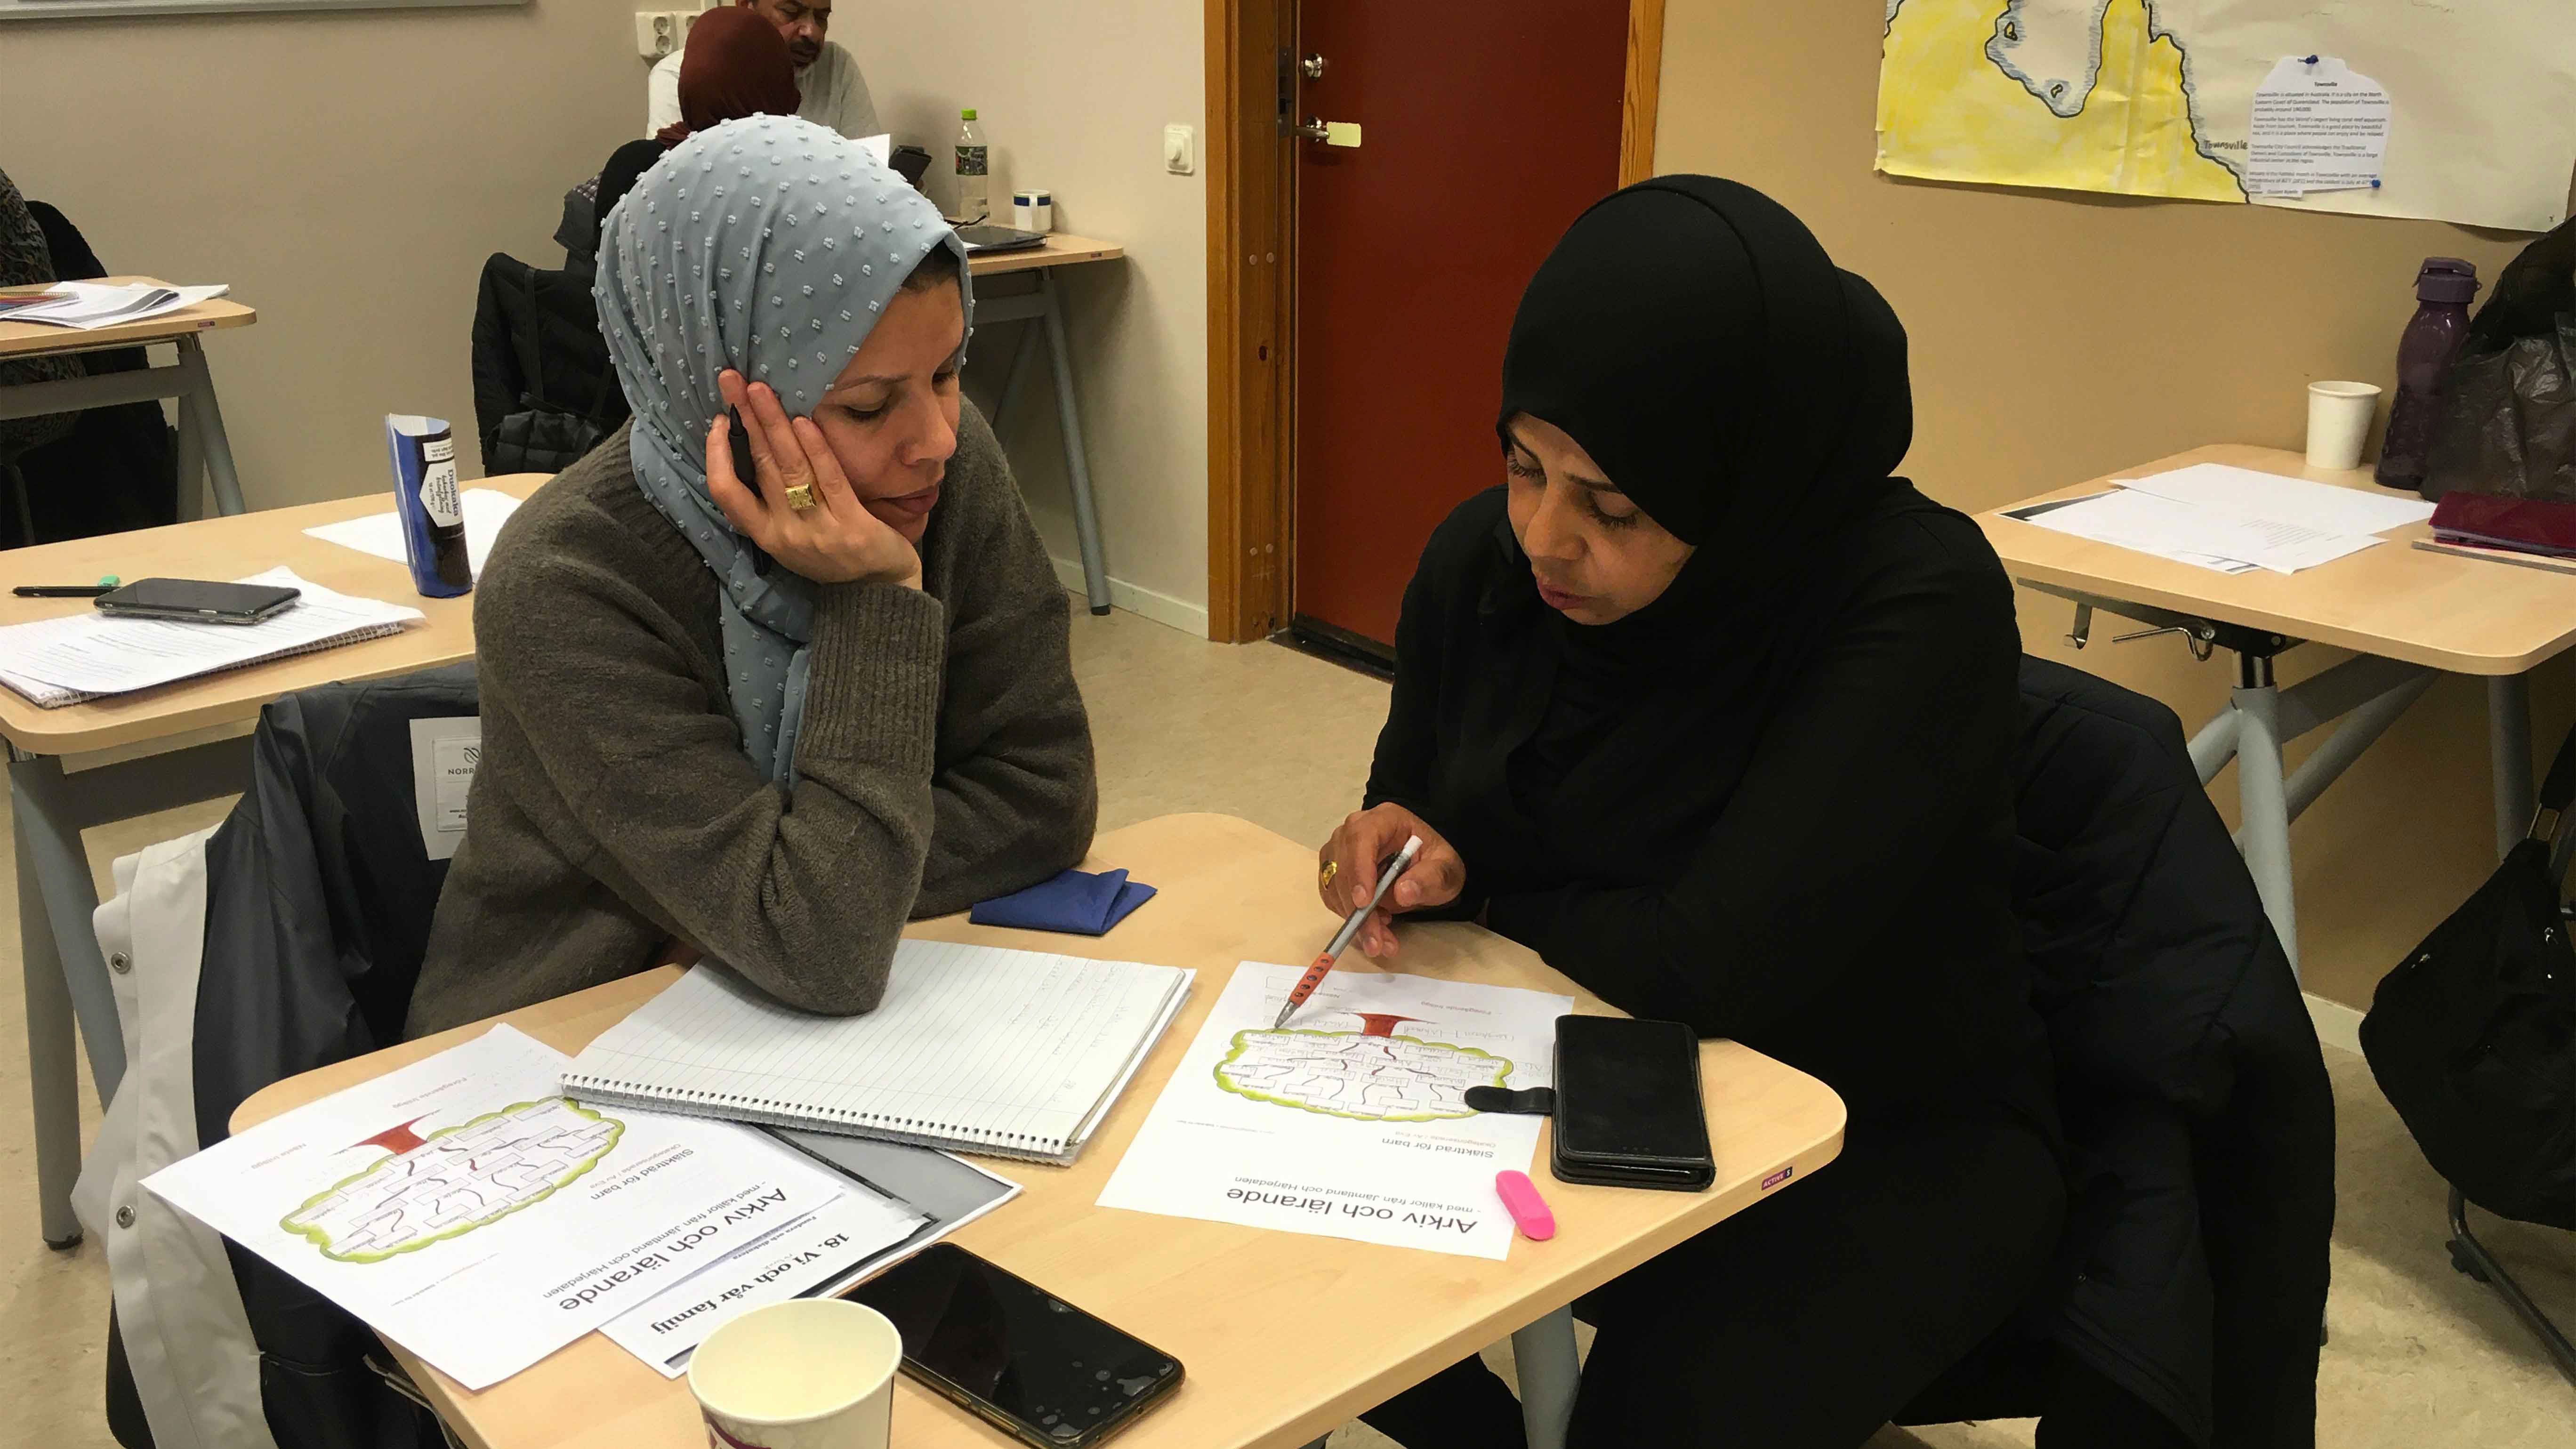 Två kvinnor sitter vid bord och studerar i klassrum.